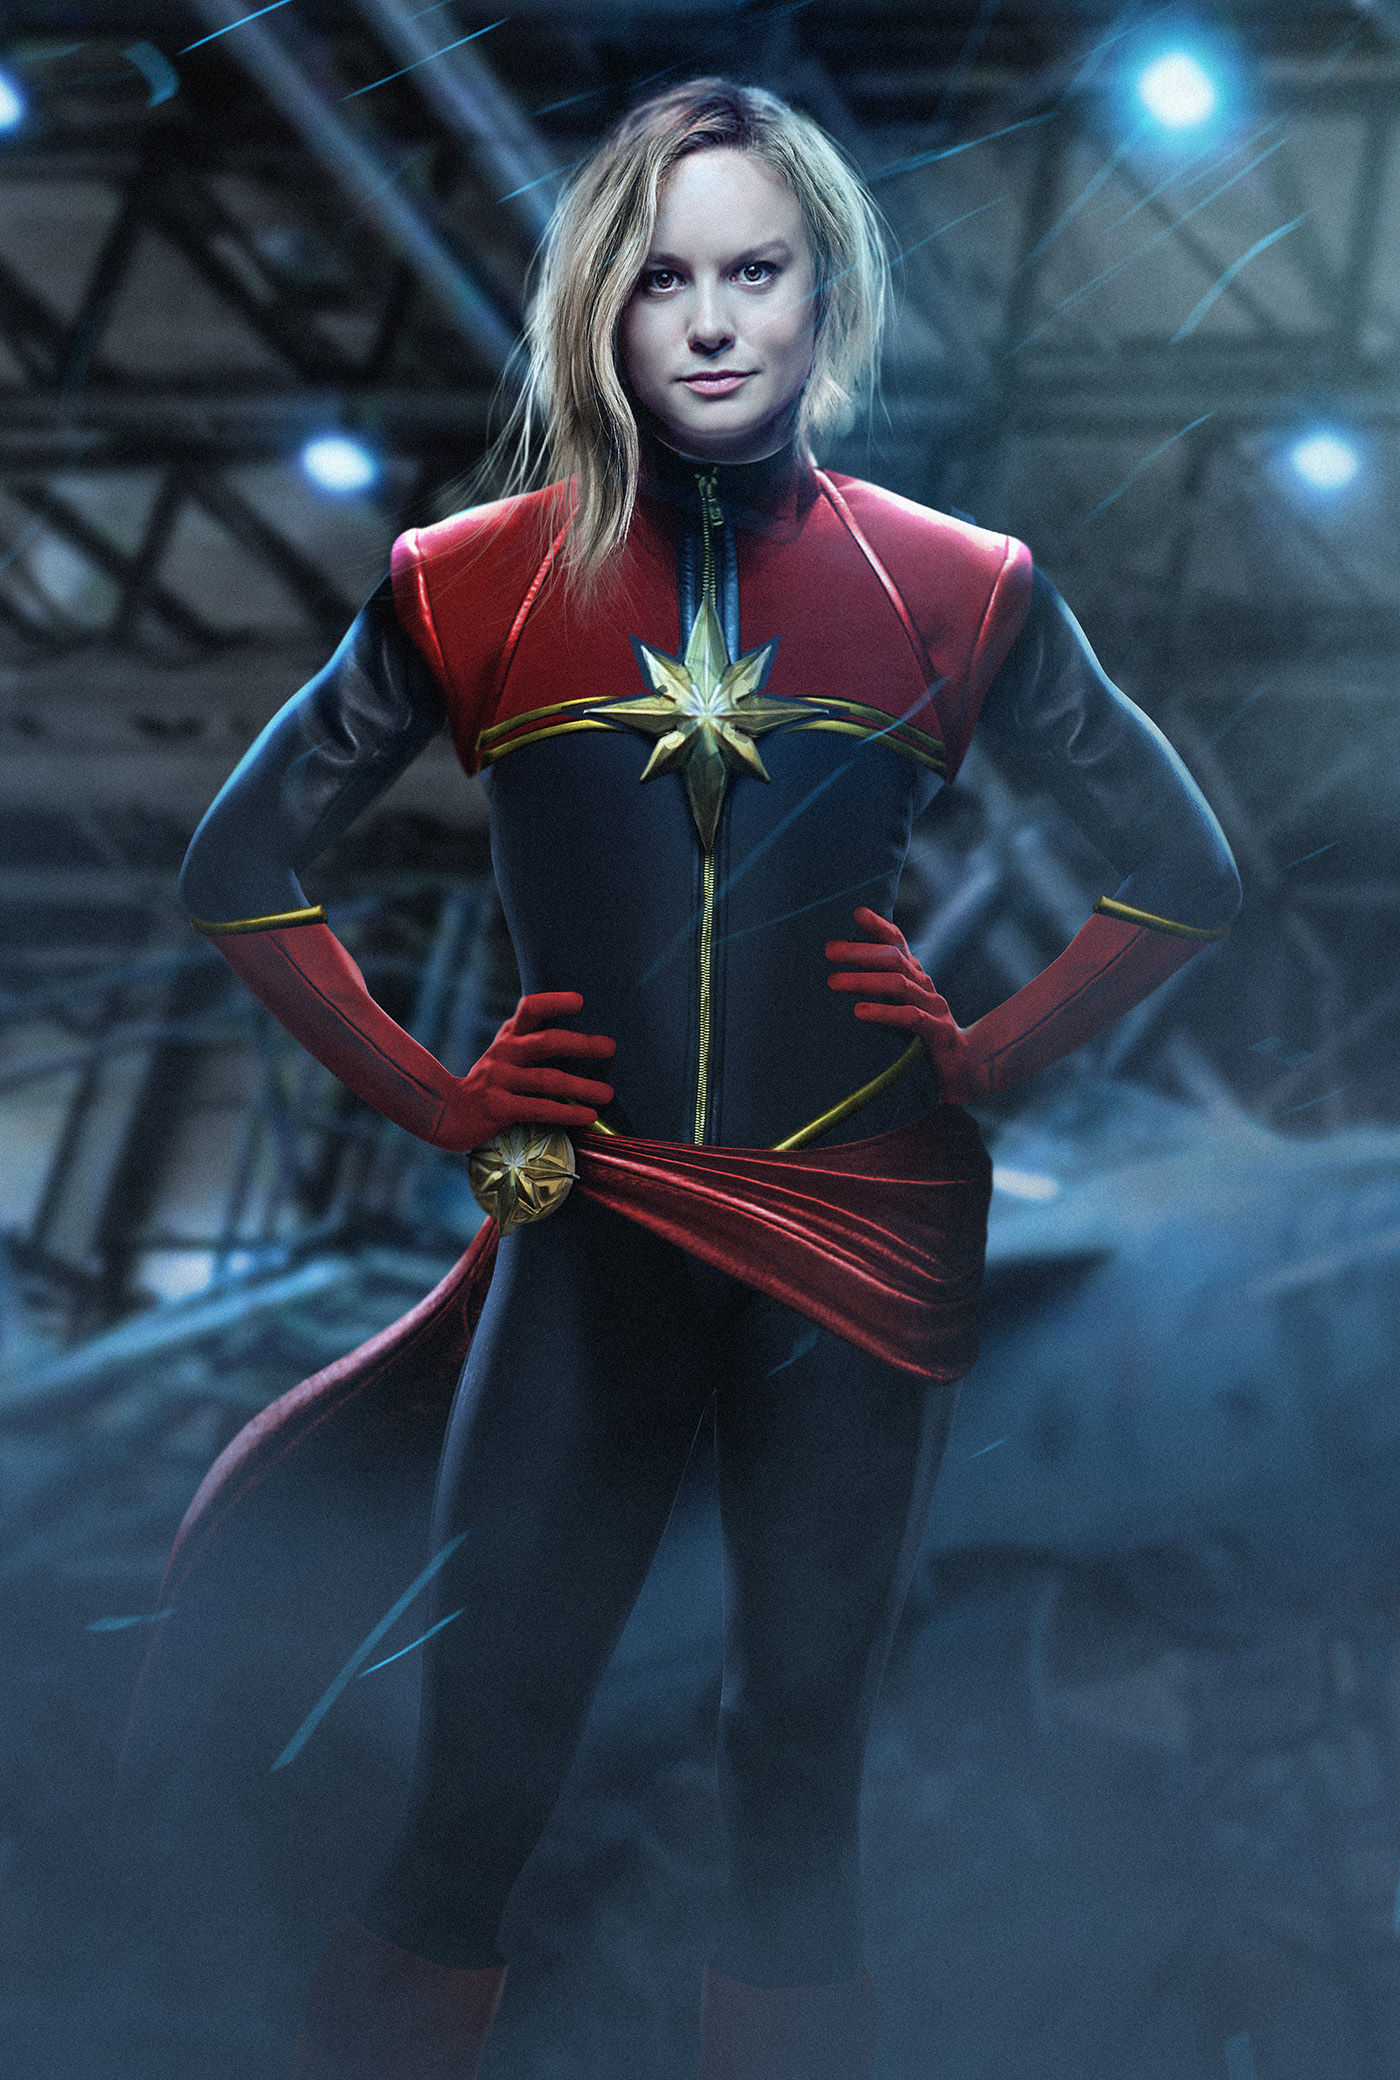 Brie-Larson-Captain-Marvel-BossLogic.jpg